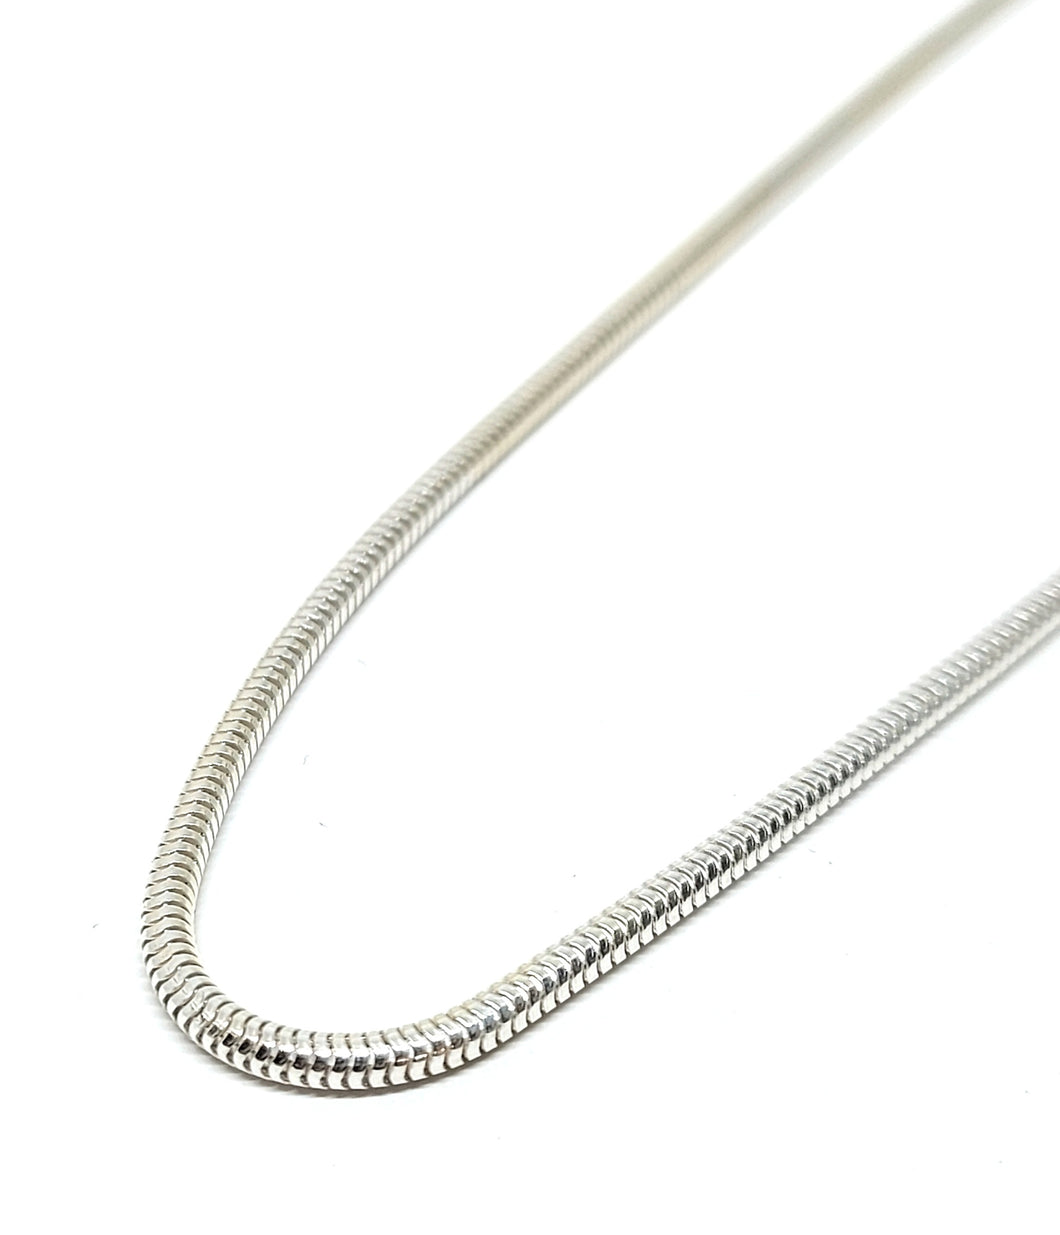 Slange kæde 2,4 mm i sterlingsølv (925)